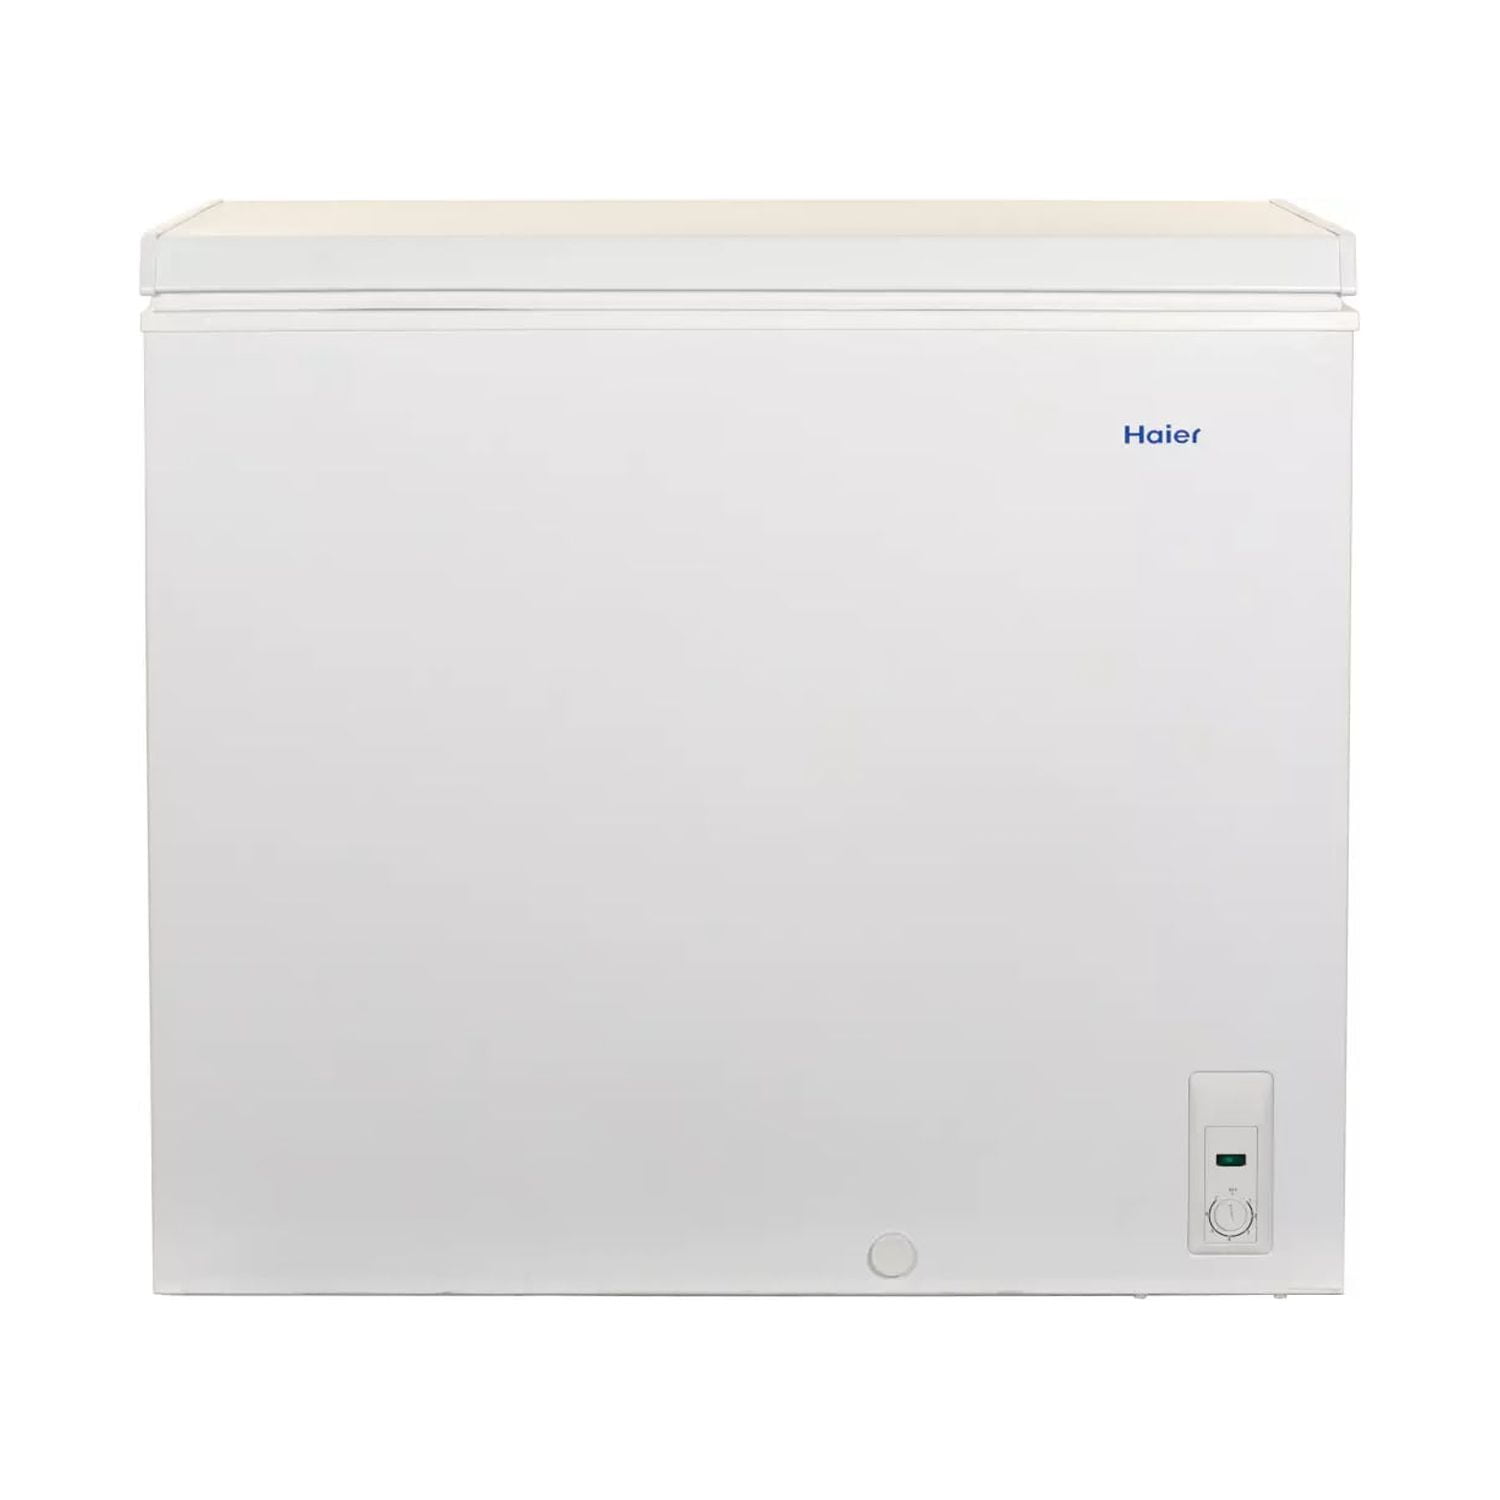 Haier 7.1 Cu. Ft. Chest Freezer HF71CM33NW, White - Walmart.com